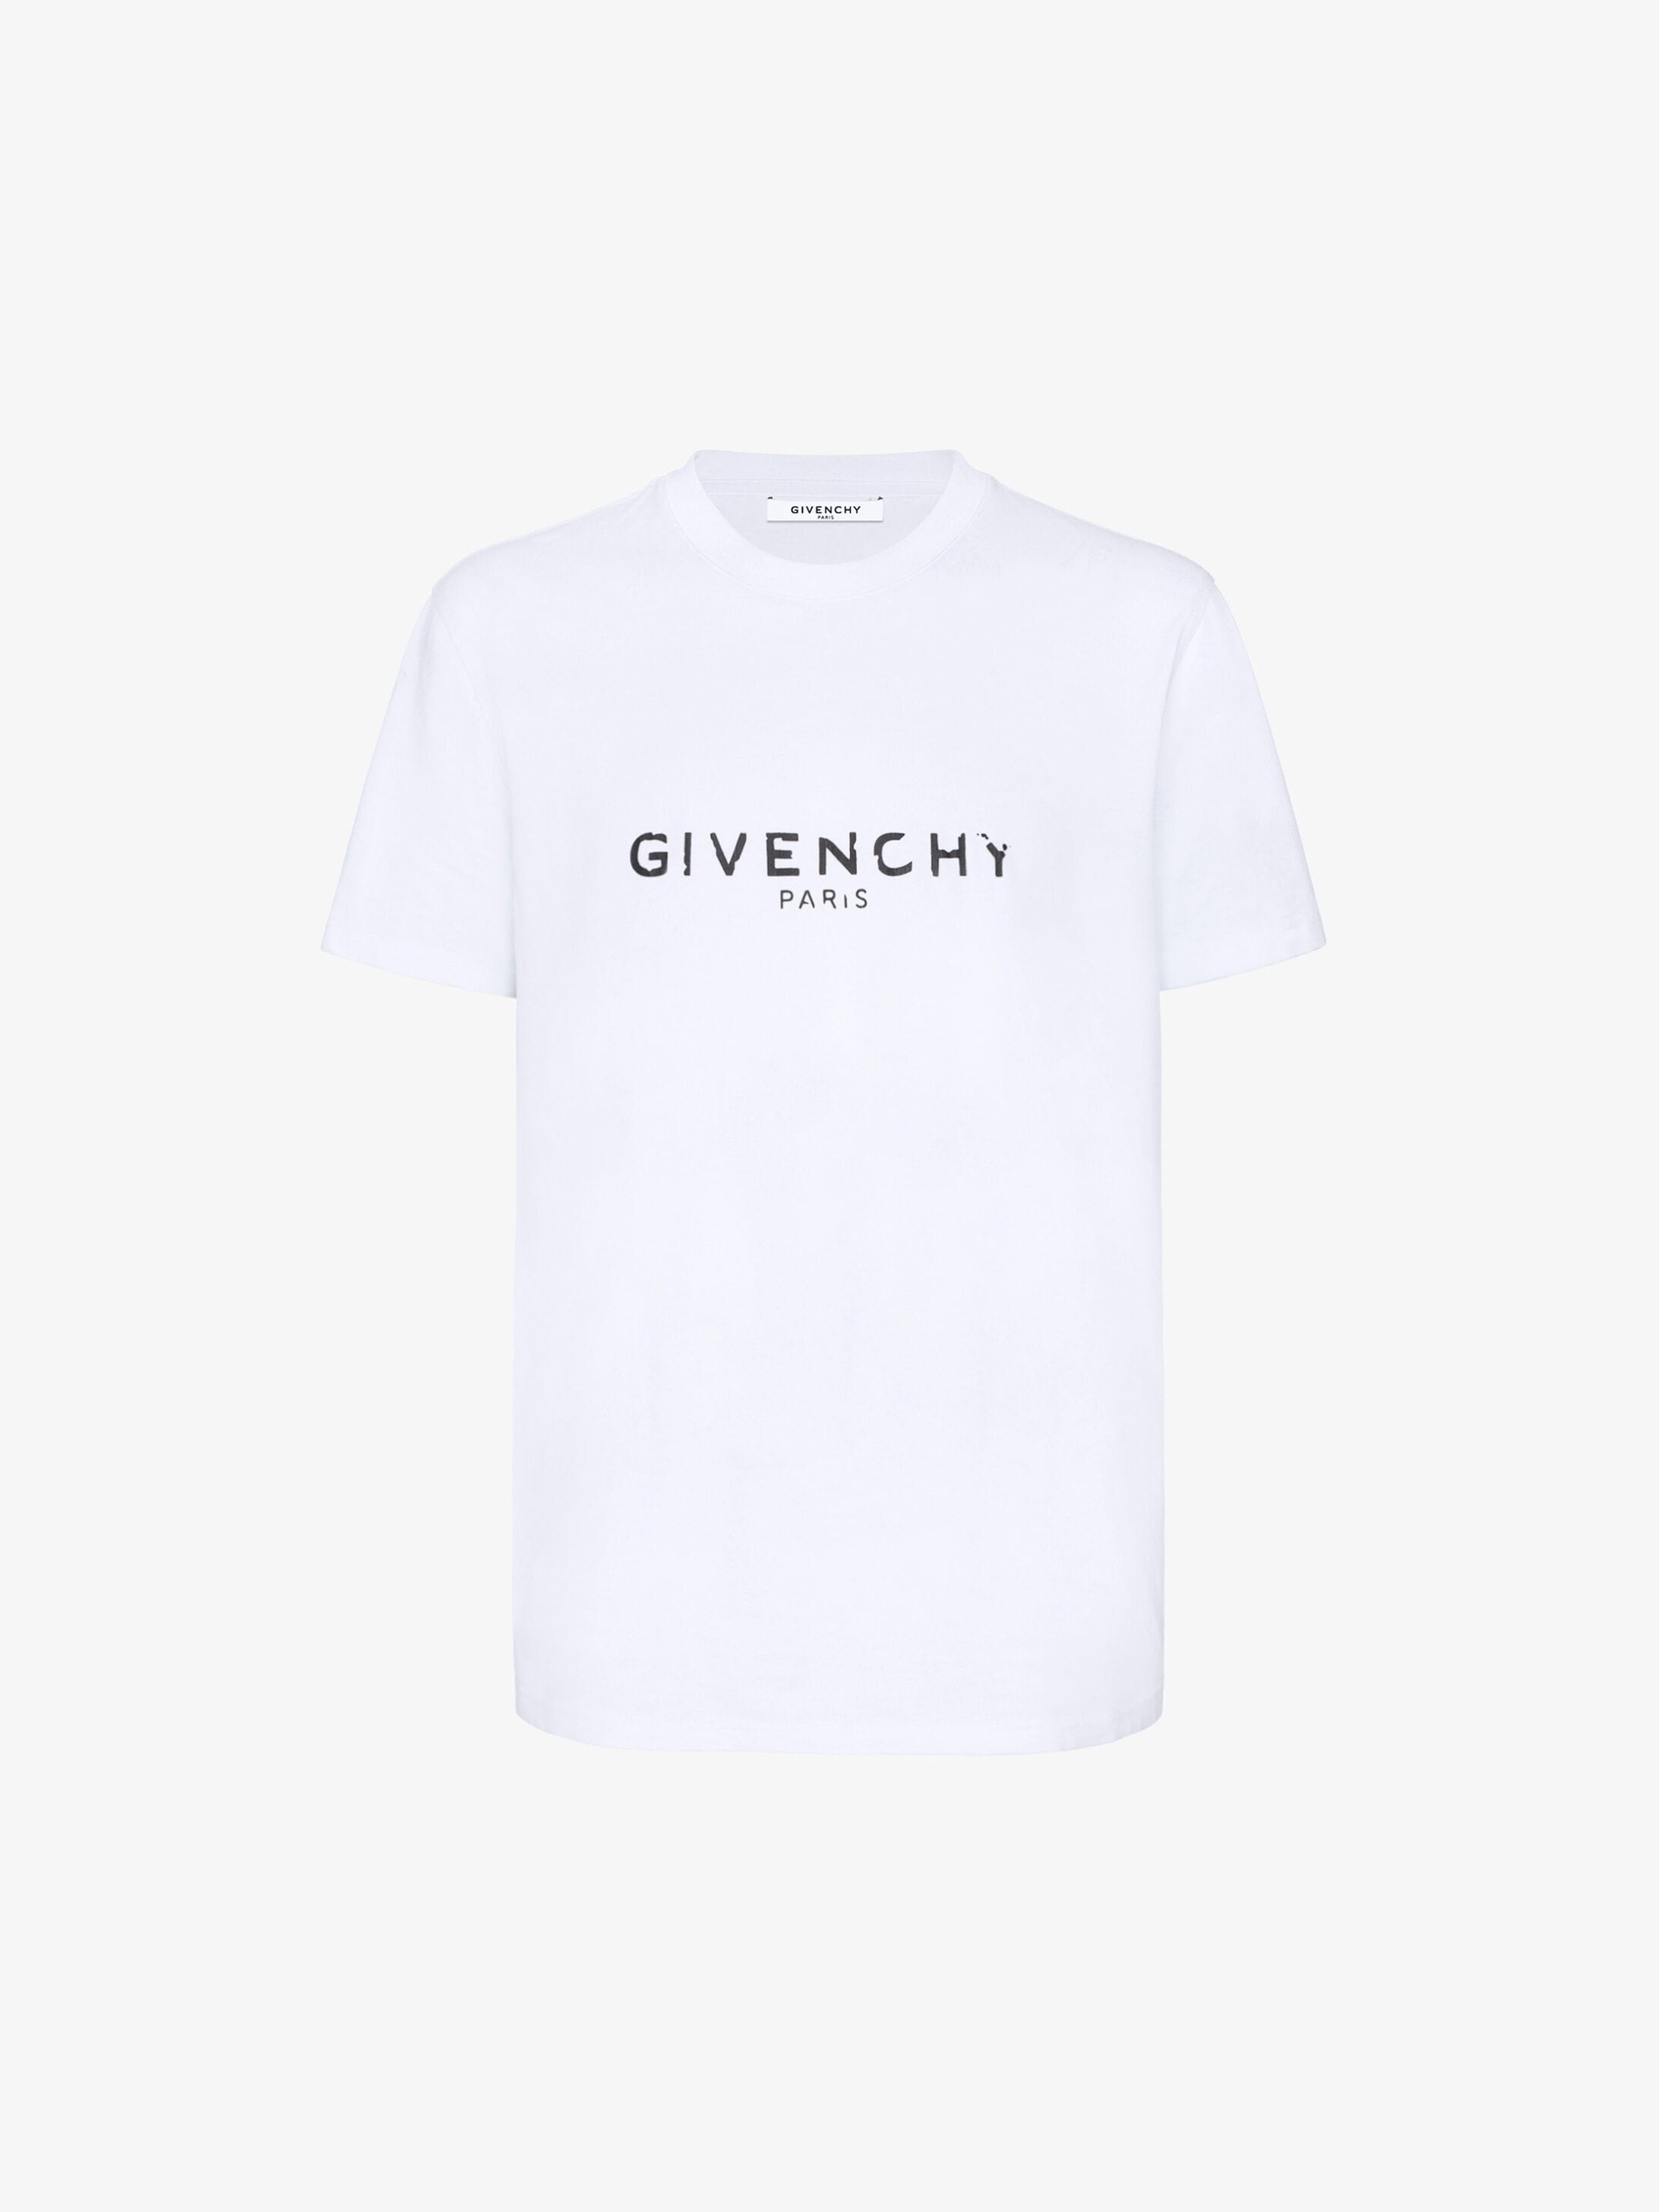 GIVENCHY PARIS slim fit t-shirt 